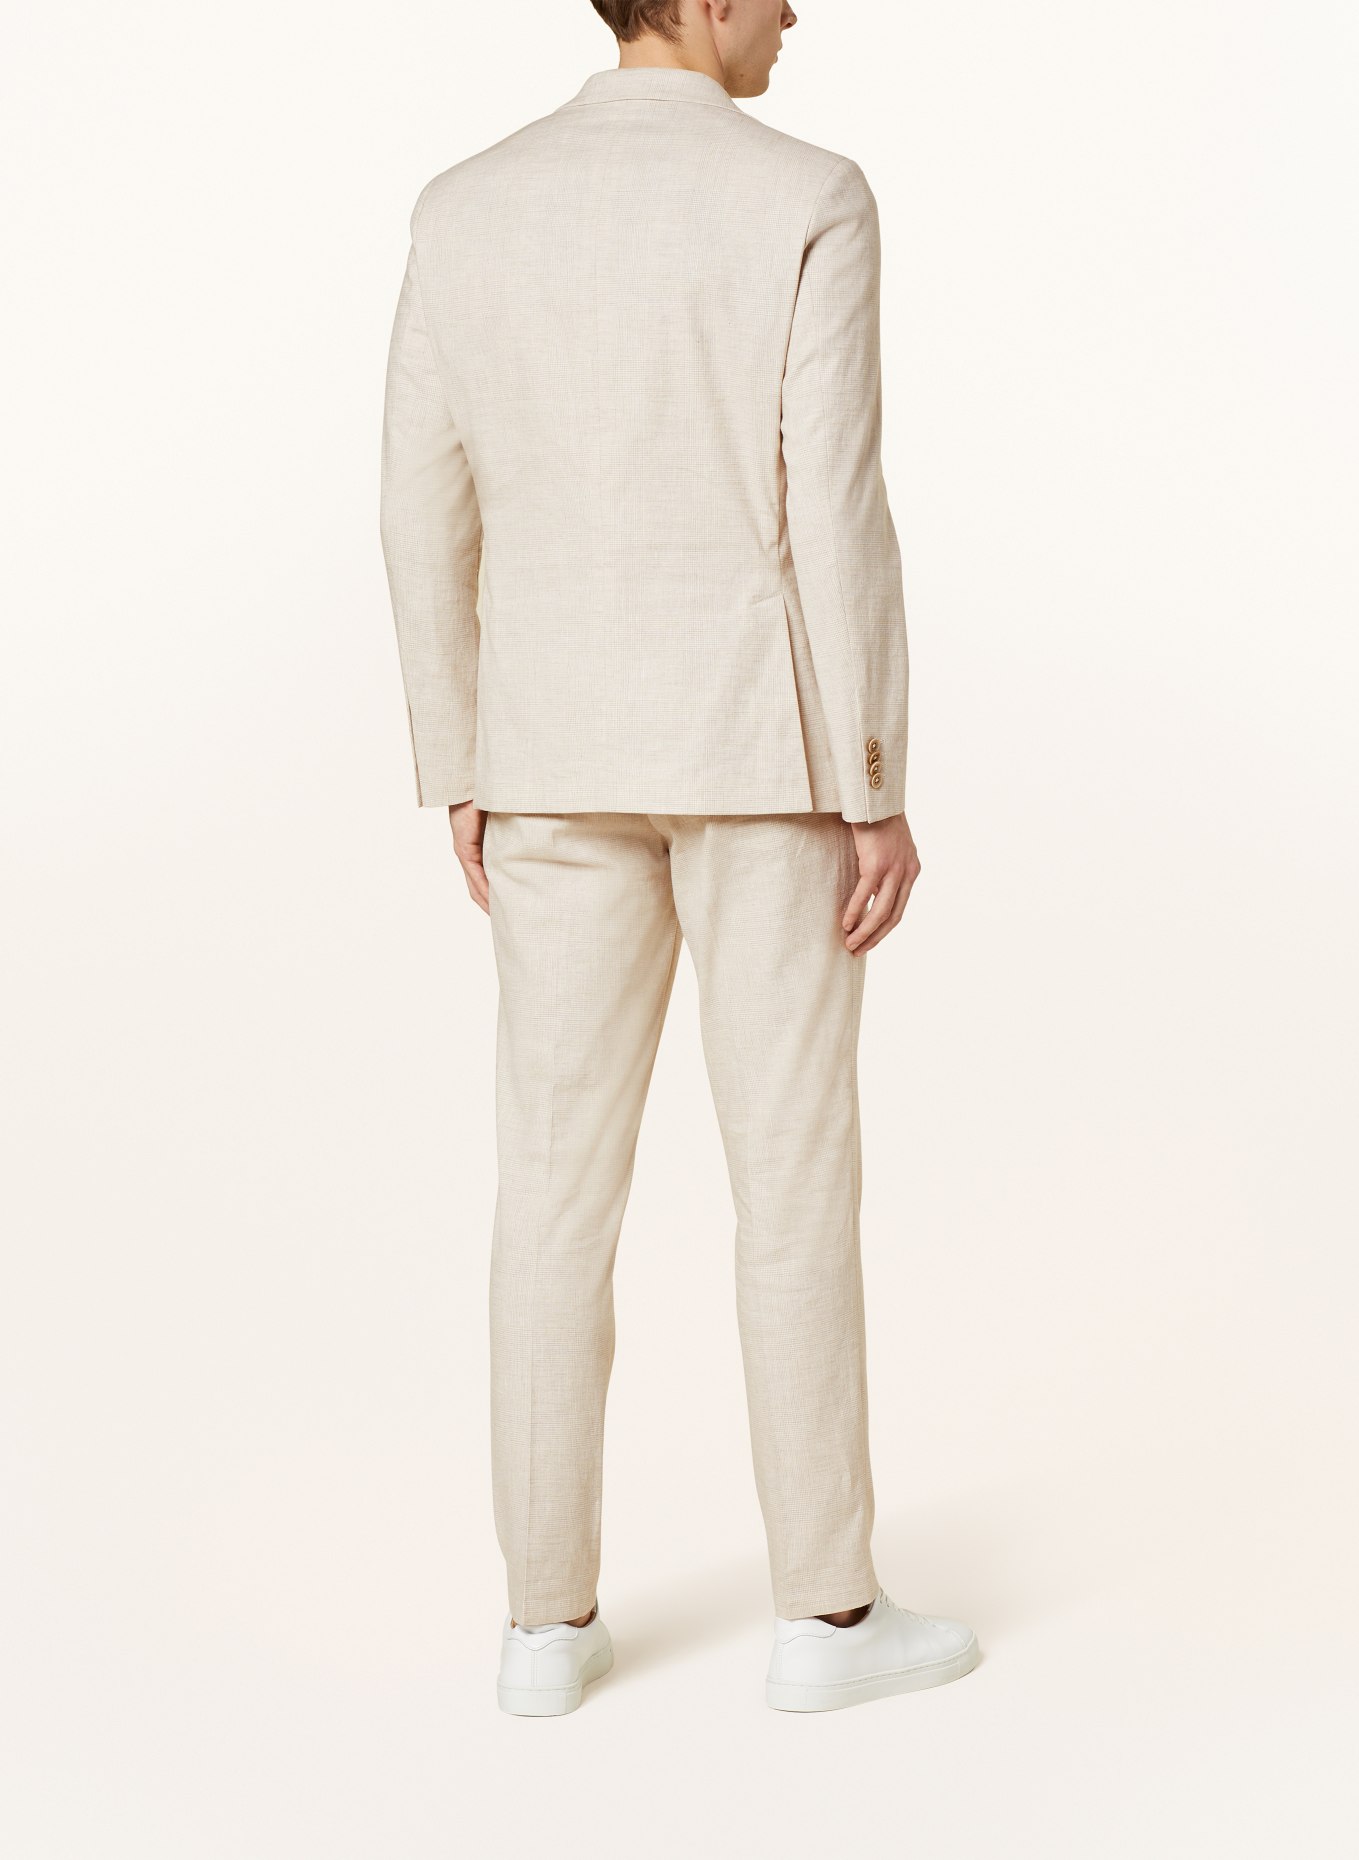 PAUL Suit jacket Slim Fit, Color: 210 Light Beige Check (Image 3)